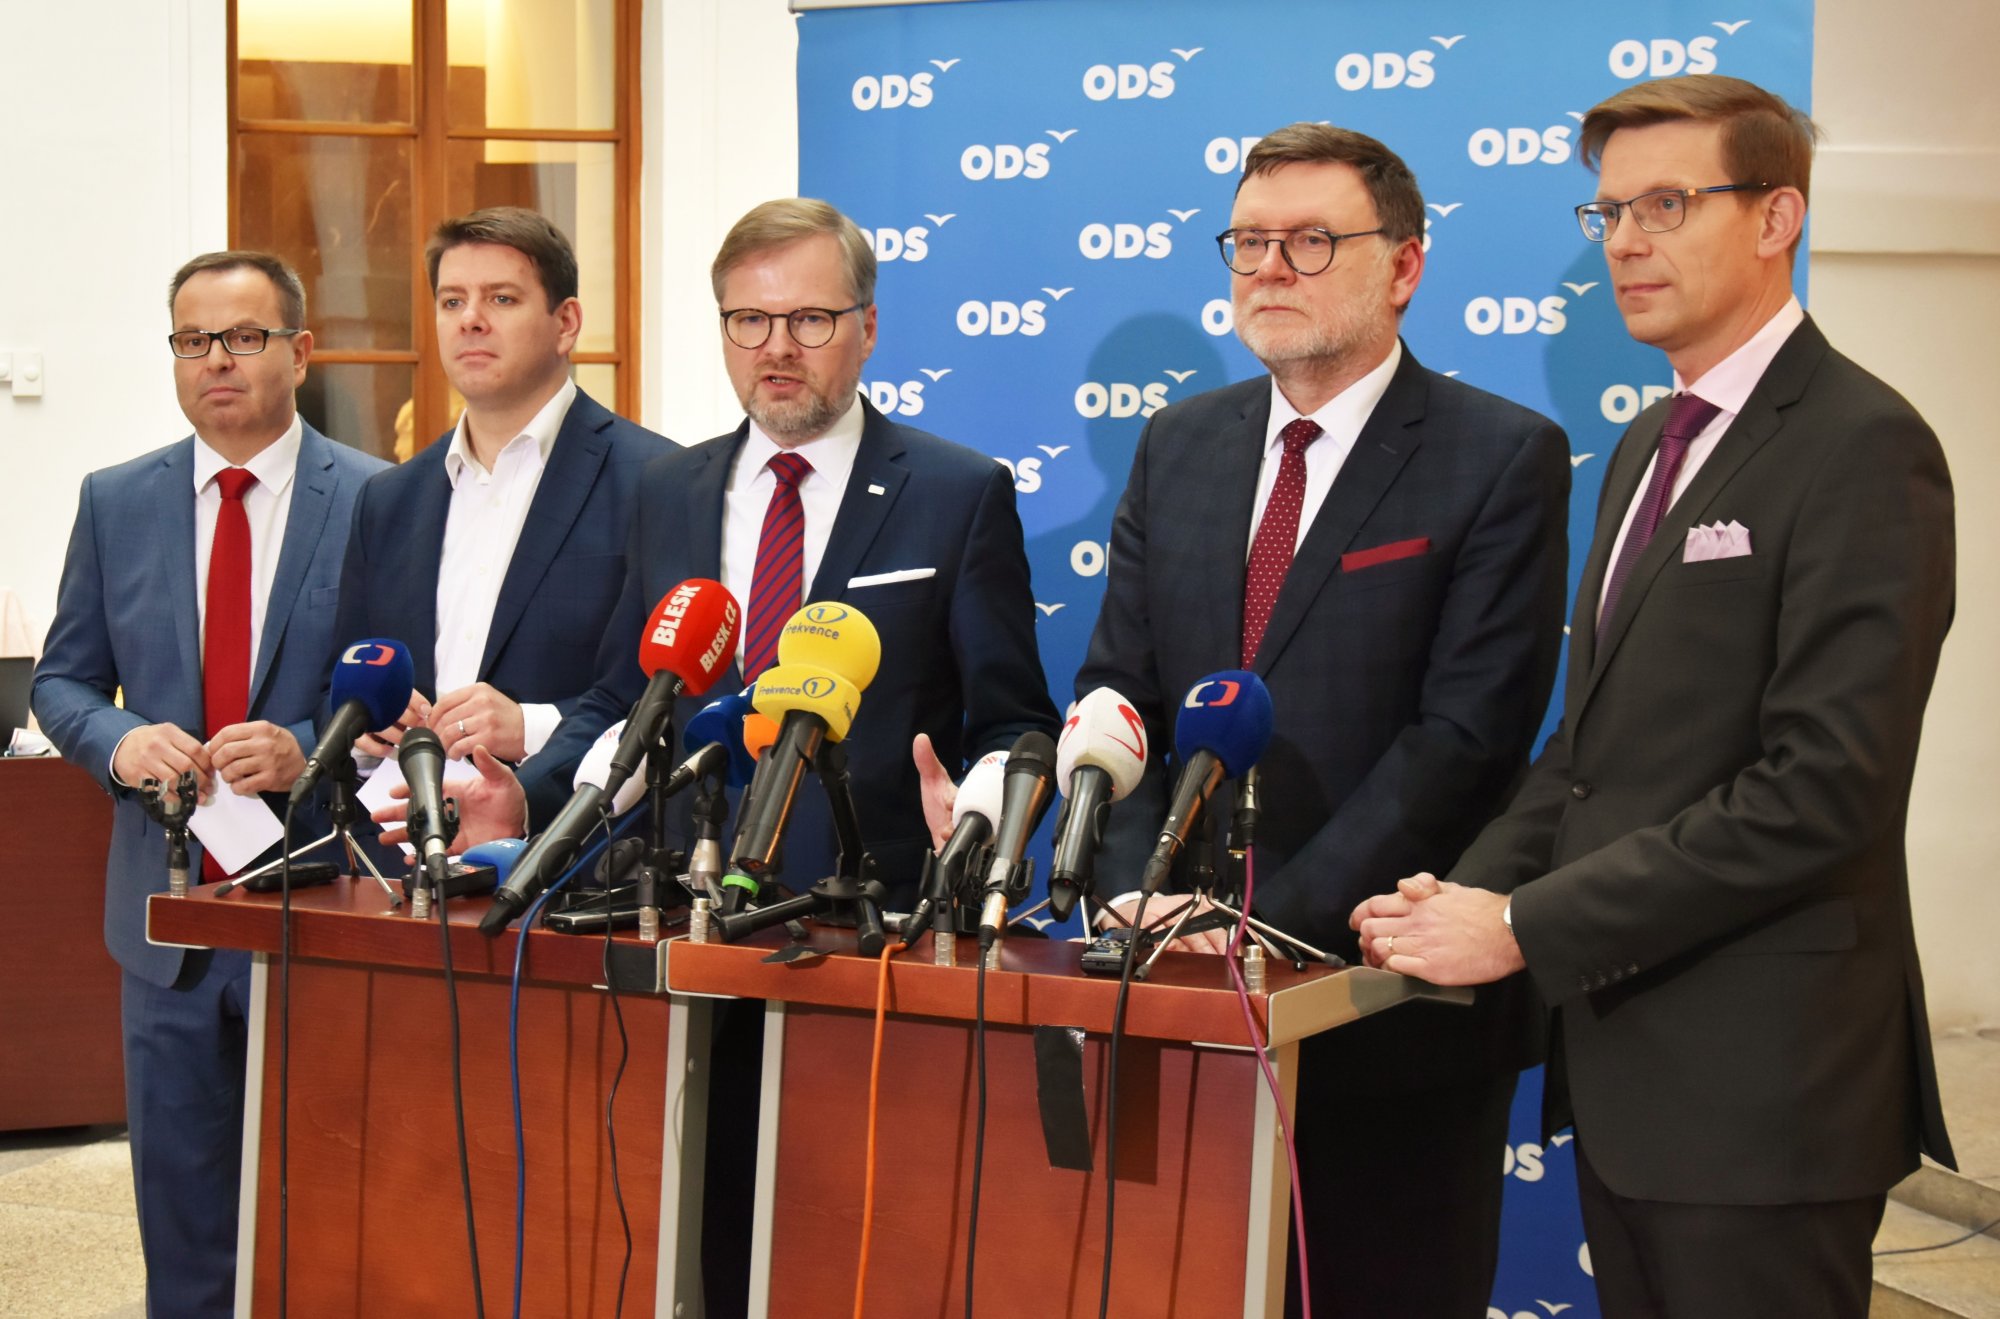 ODS: Vláda musí dělat kroky v zájmu ČR, nikoliv v zájmu Andreje Babiše. Navrhujeme komisi, která na to dohlédne